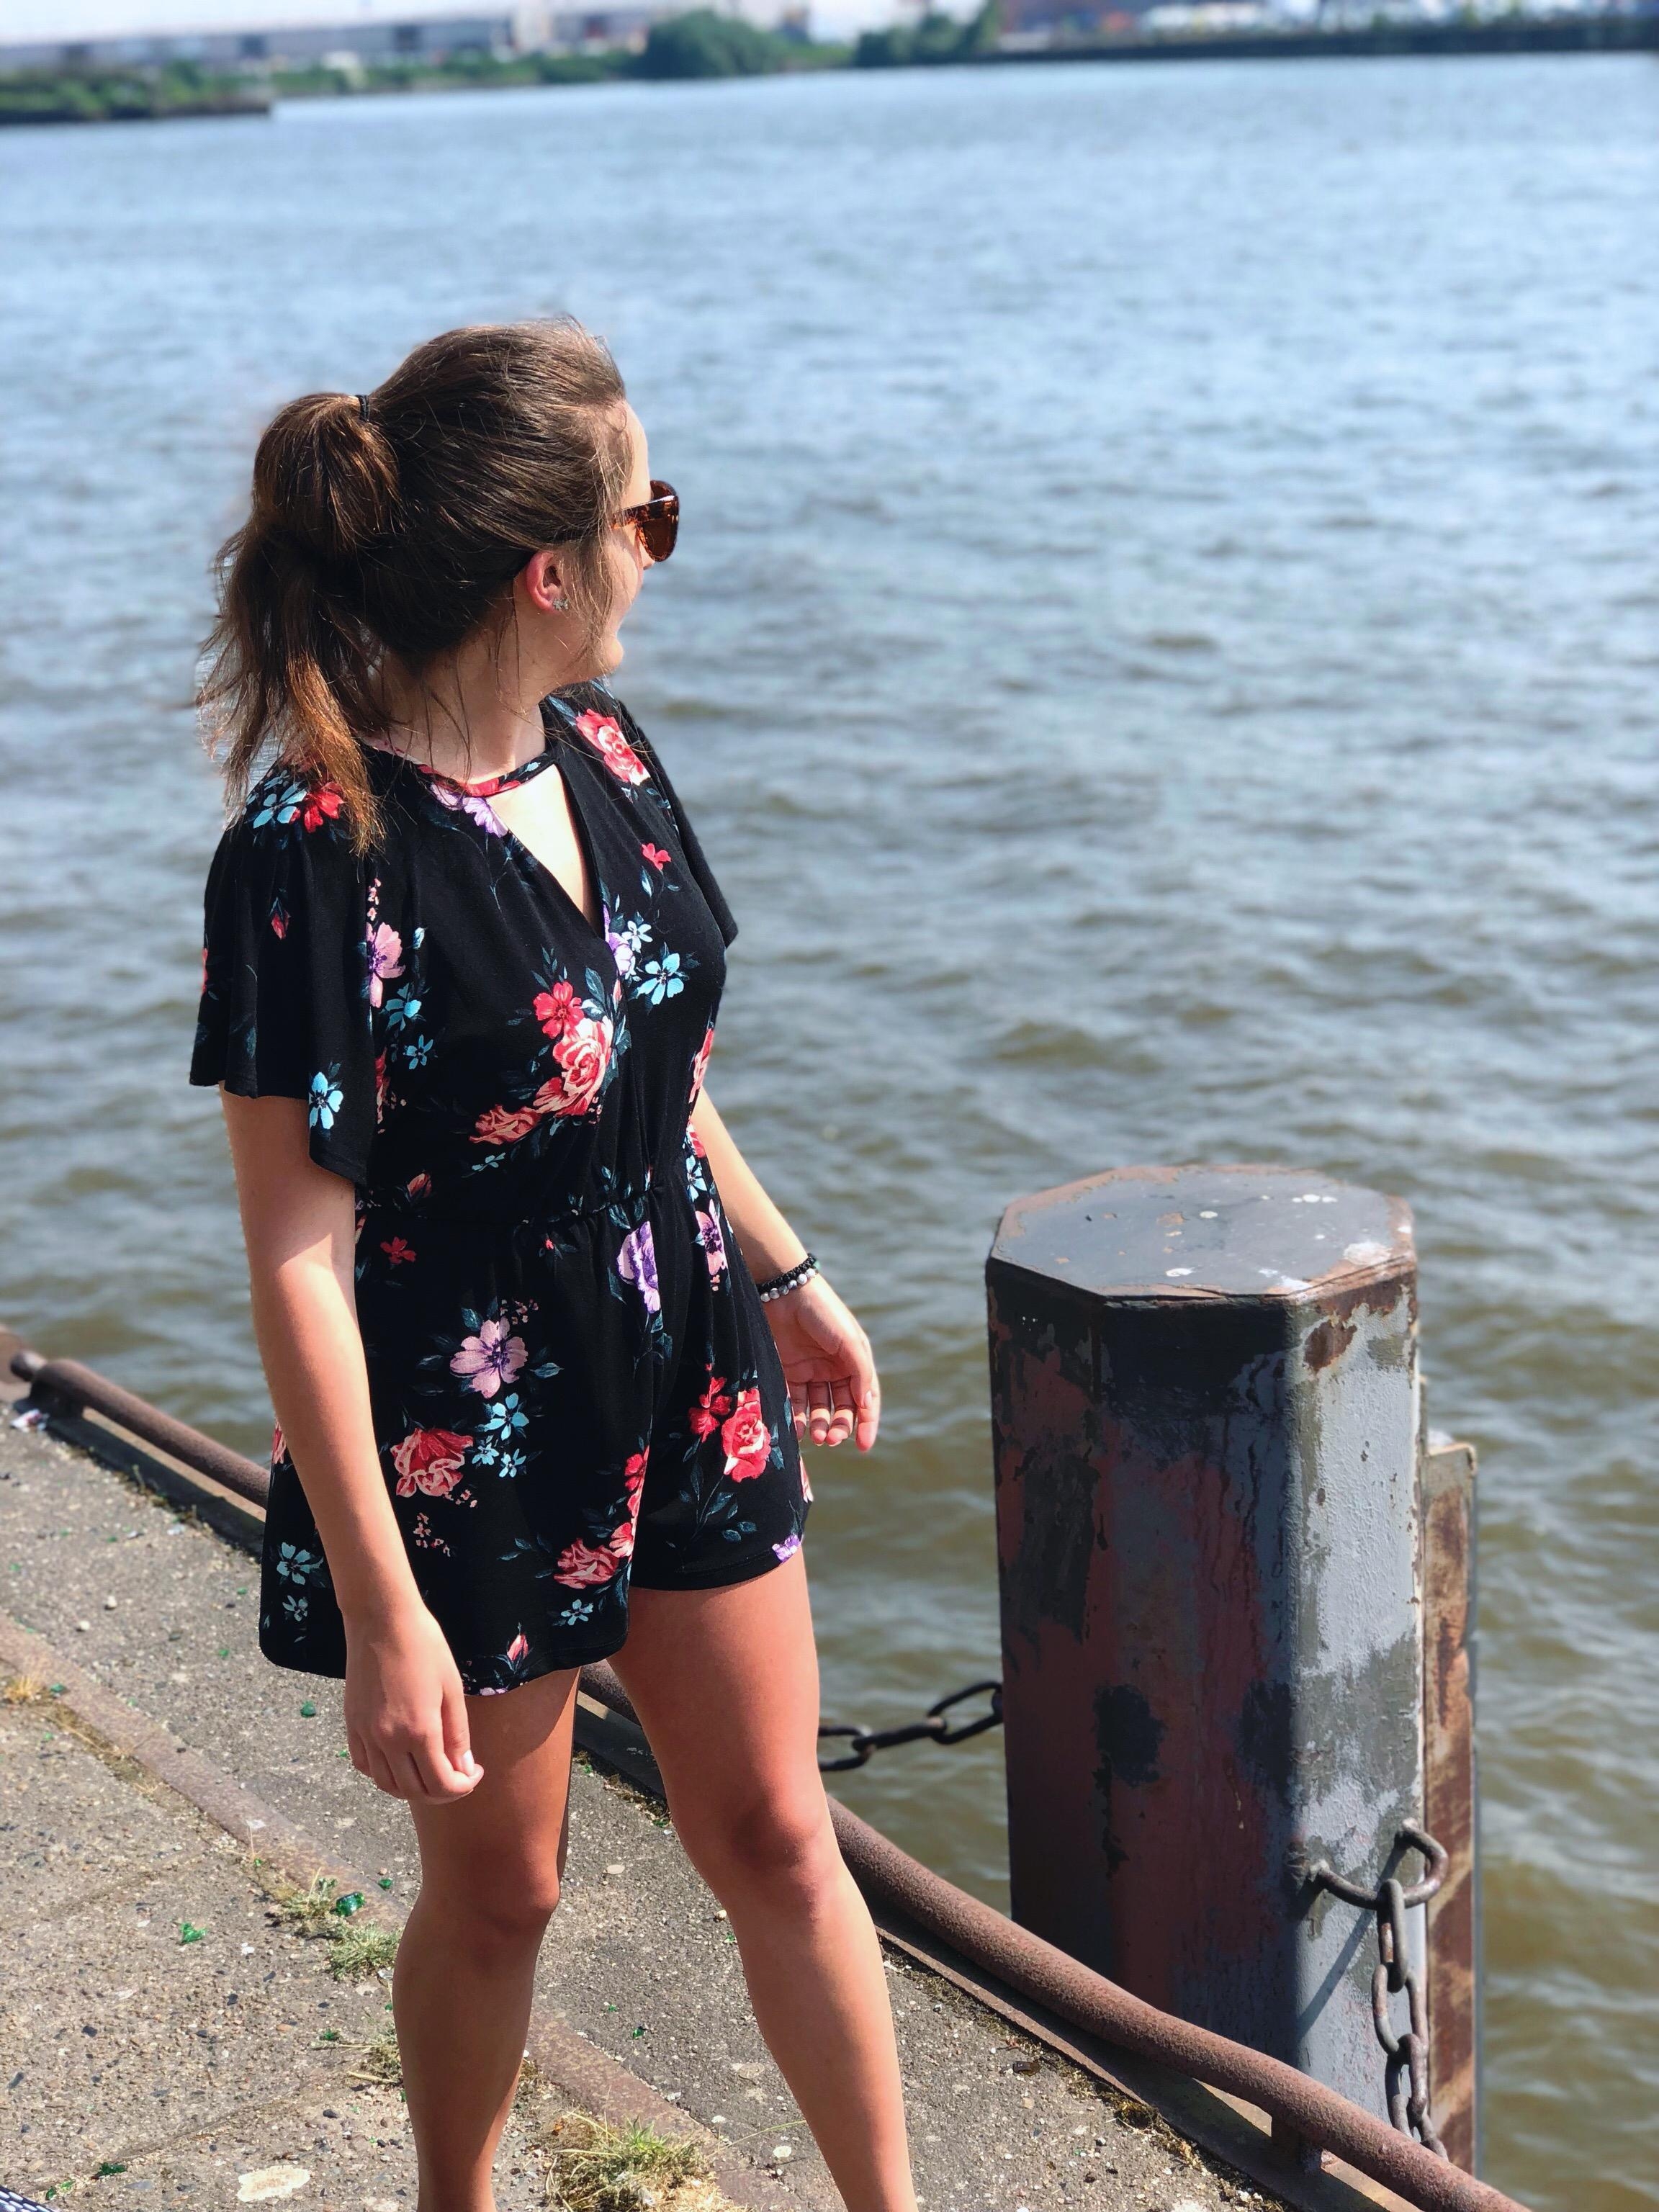 Spaziergang am Hafen ⚓️ #Hamburg #Sommer 